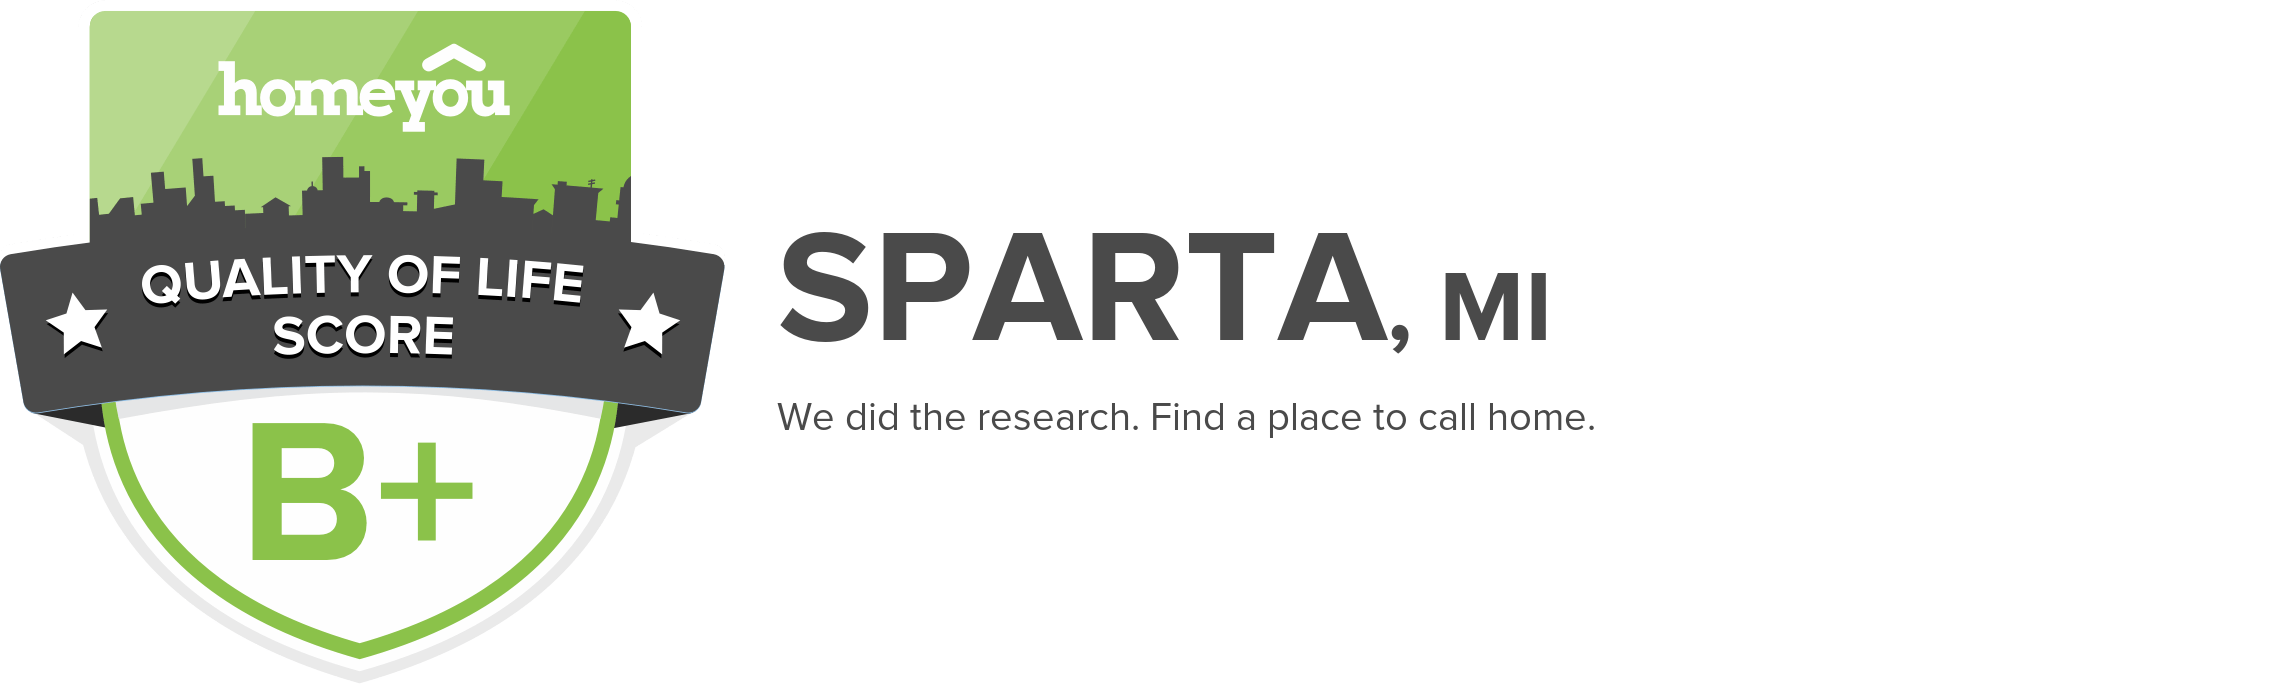 Sparta, MI